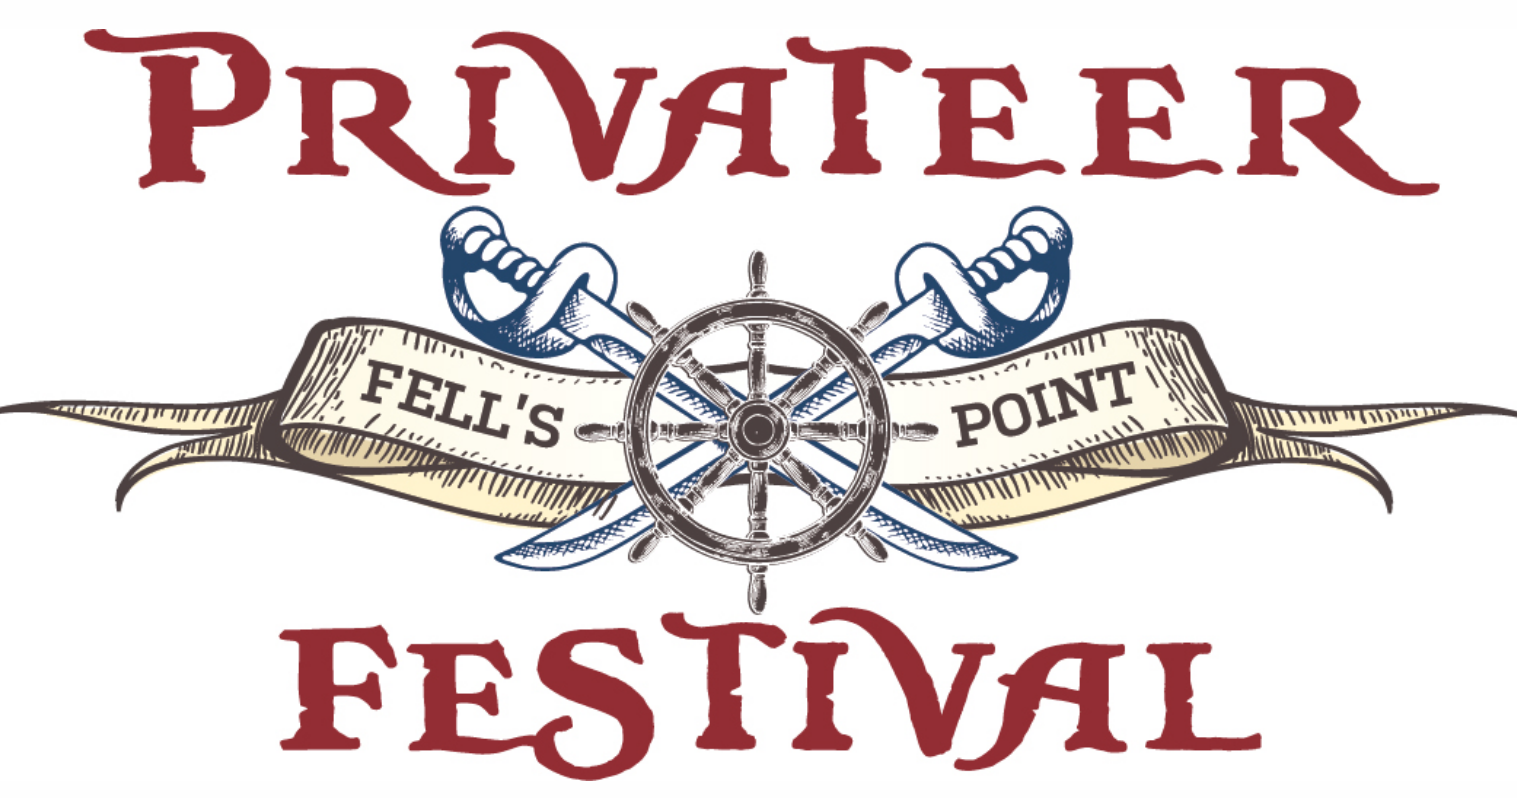 Pivateer Festival